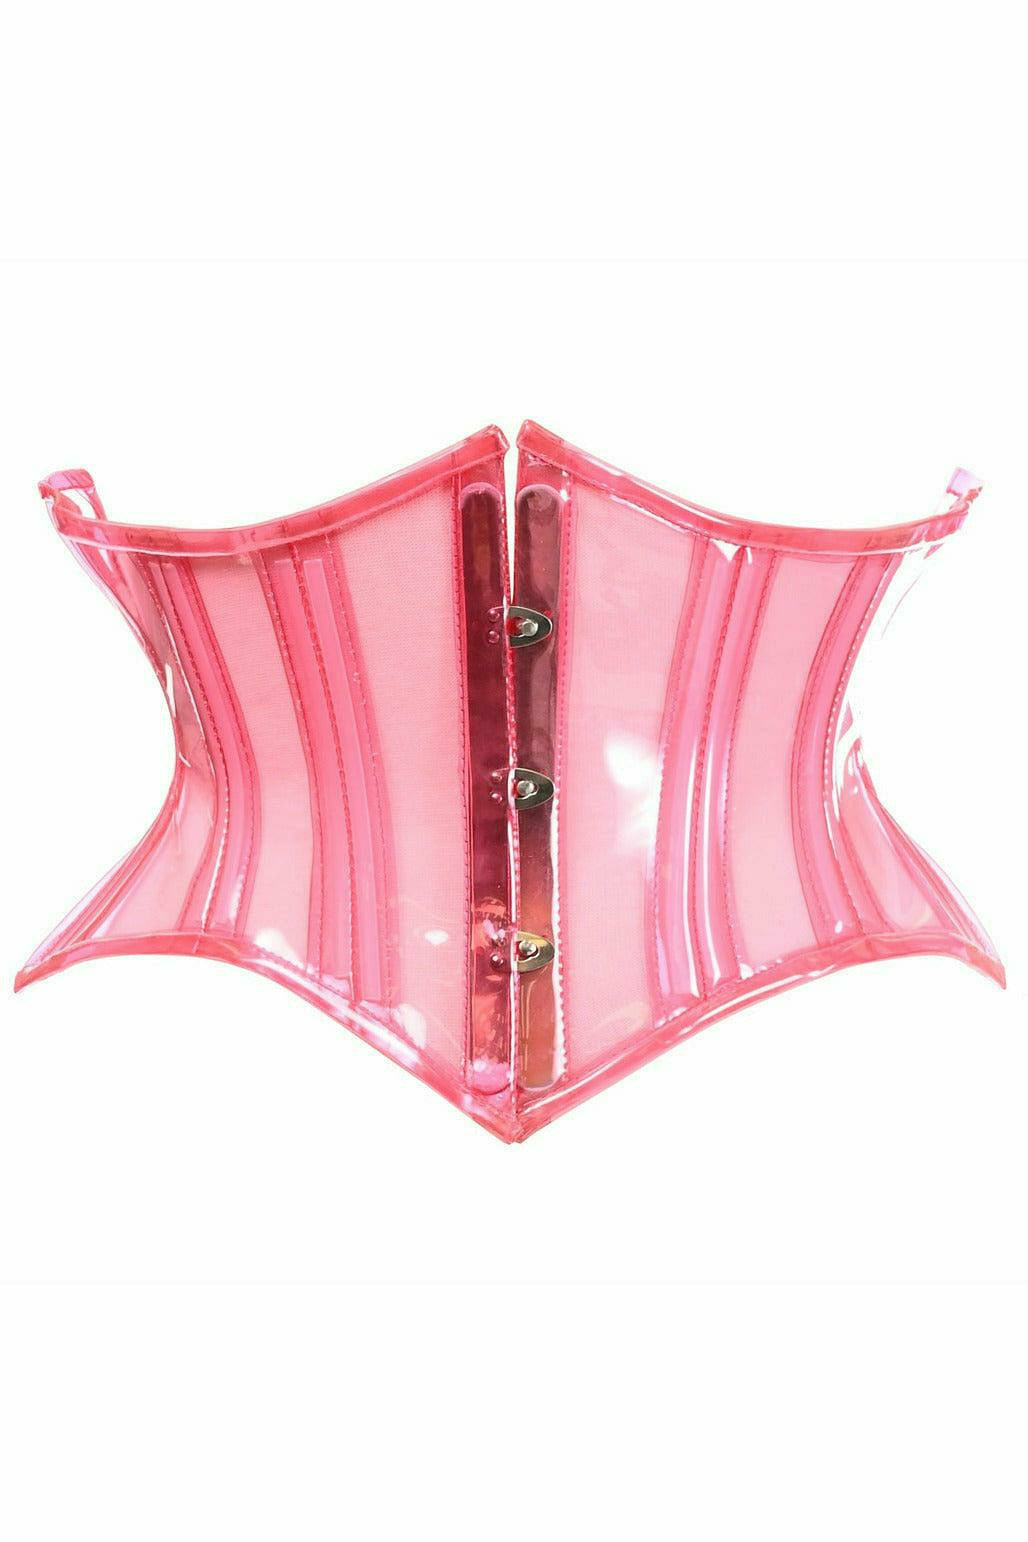 Daisy Corsets Lavish Clear Pink Curvy Cut Mini Cincher Corset